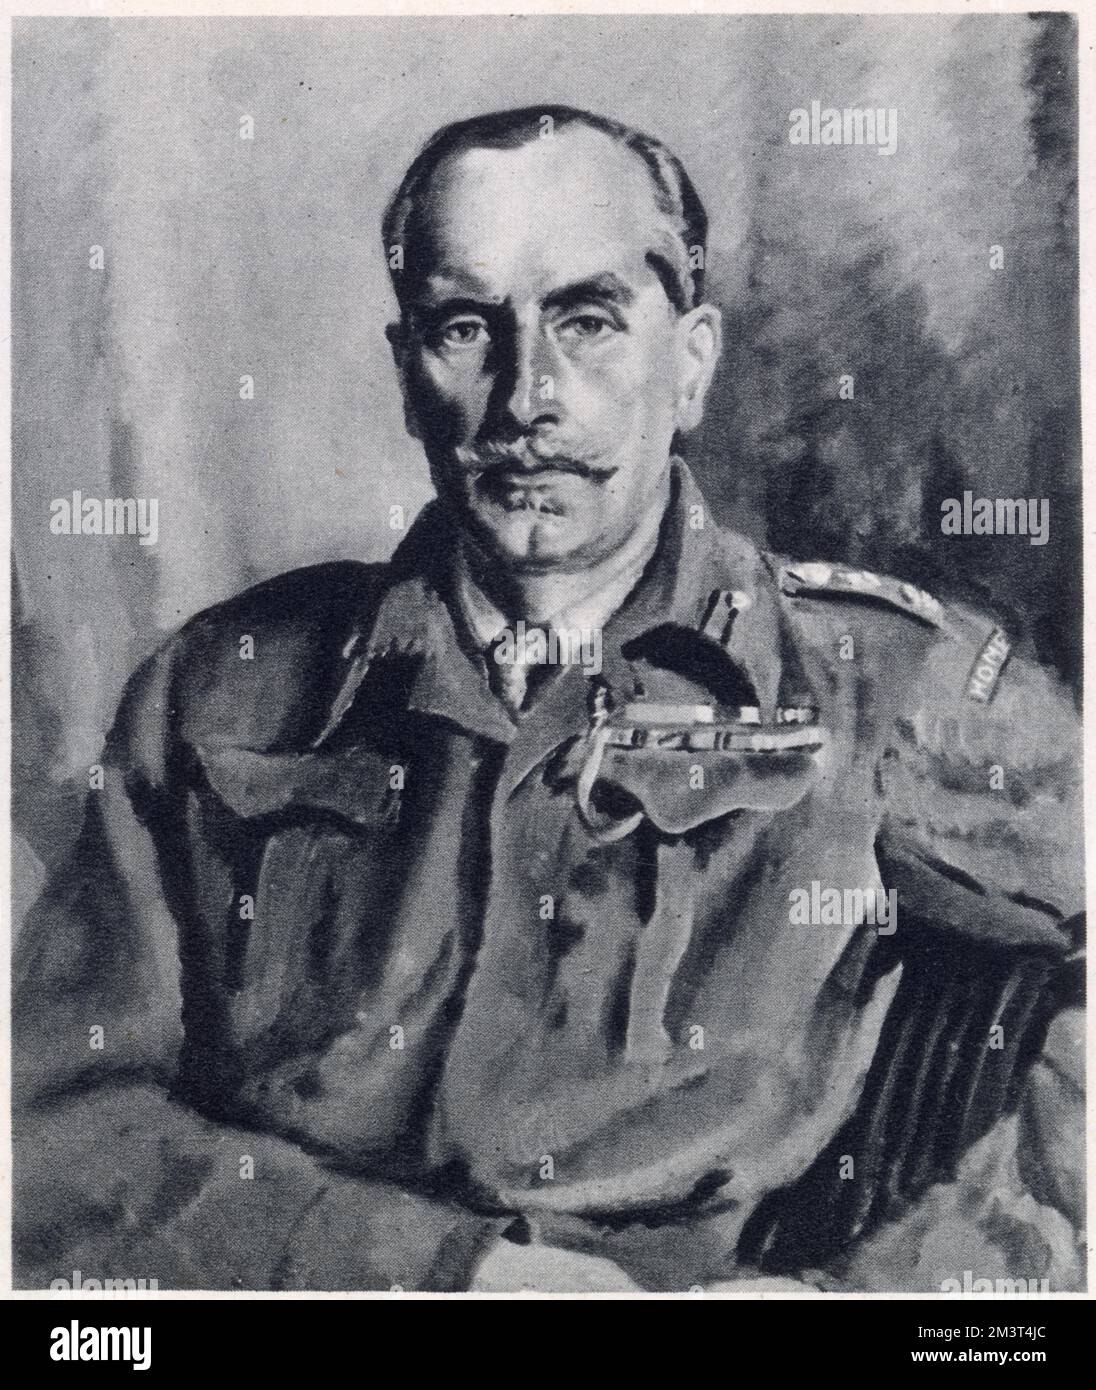 Colonel Ebenezer Pike, C.B.E., MC, Kommandant der Sussex-Heimwache während des Zweiten Weltkriegs. Porträt von seiner Frau, dem Künstler Olive Snell. Stockfoto